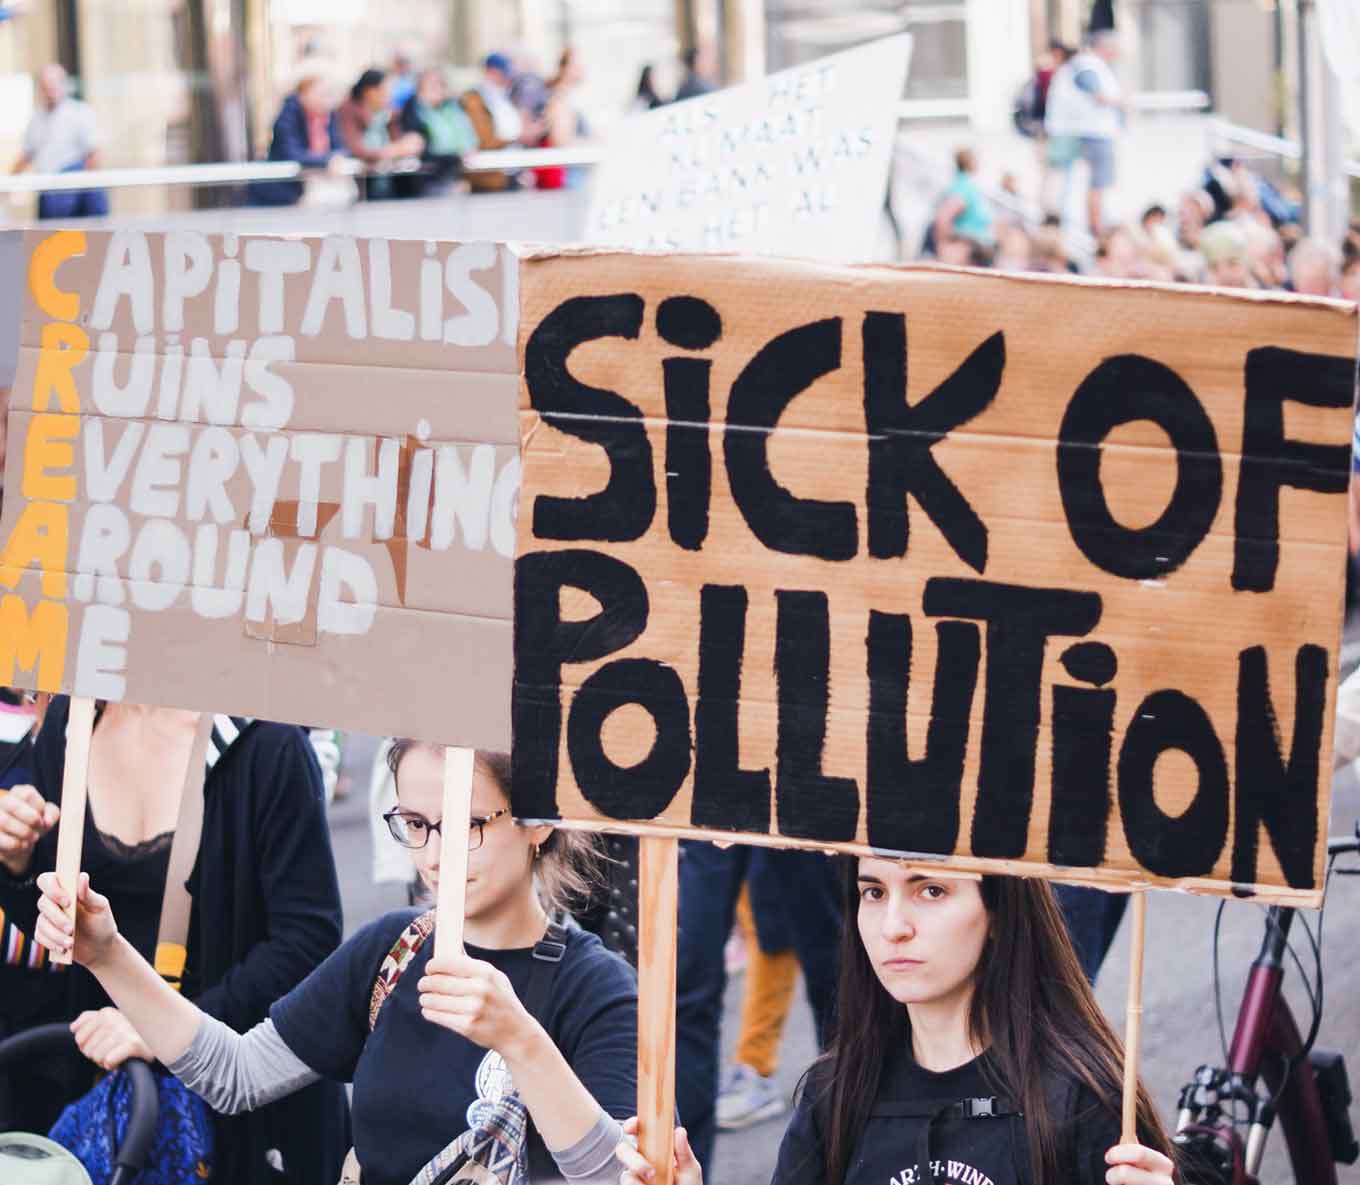 Protestborden met de tekst "Kapitalisme ruïneert alles om me heen" en "Ziek van vervuiling"